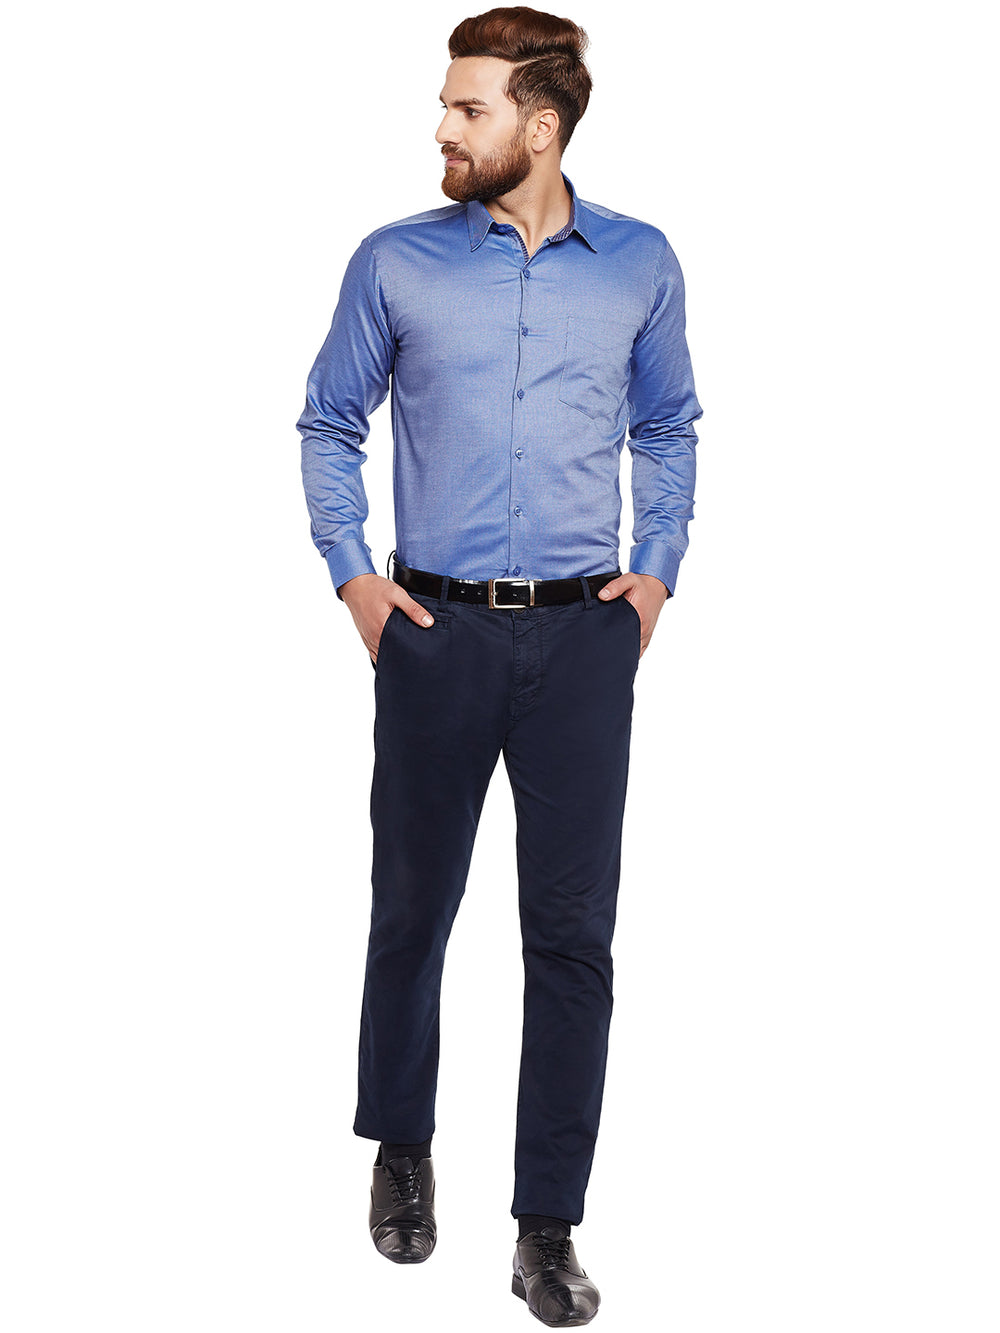 Buy Men Blue Slim Fit Print Full Sleeves Casual Shirt Online - 749246